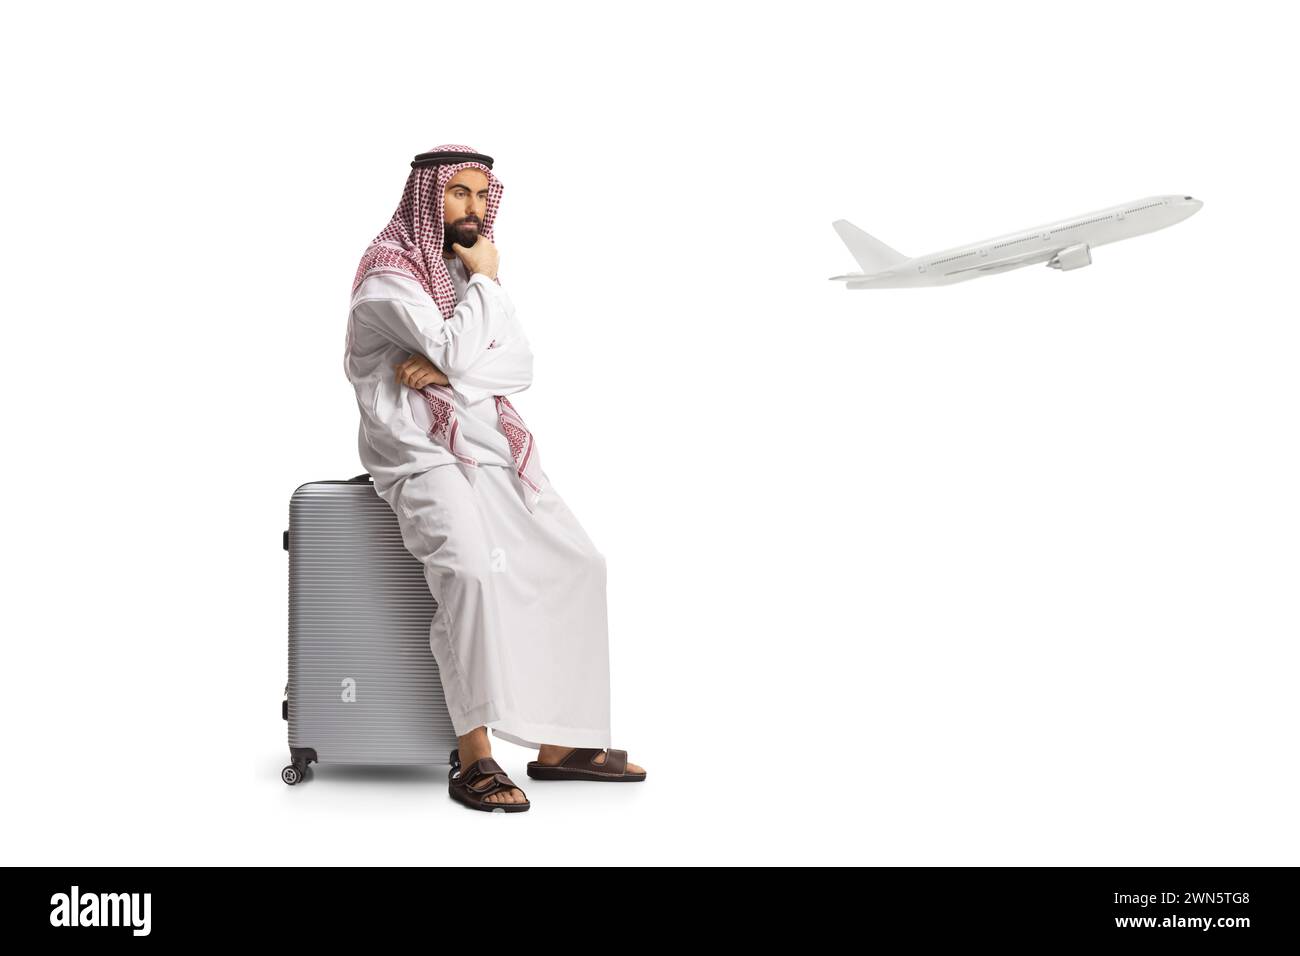 Homme arabe saoudien assis sur une valise et attendant un vol isolé sur fond blanc Banque D'Images